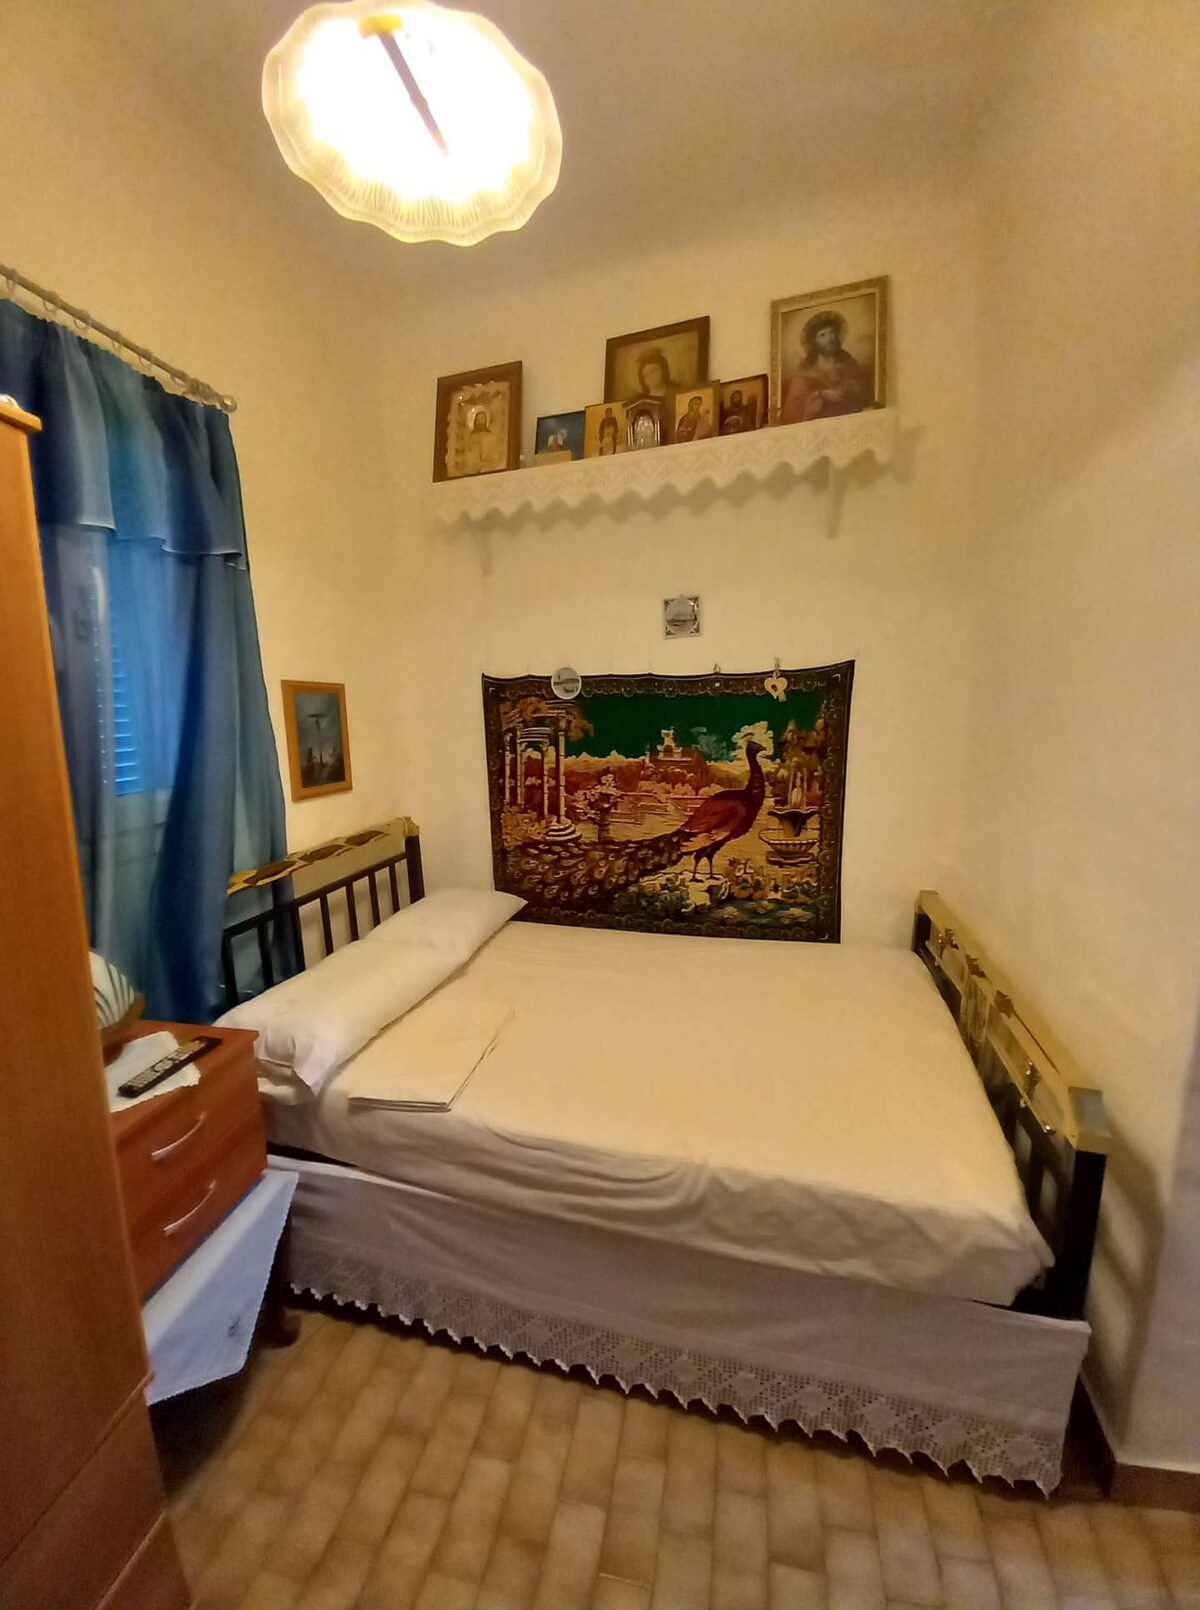 Μικρό με στιλ εξοχικό διαμέρισμα στη Σύρο